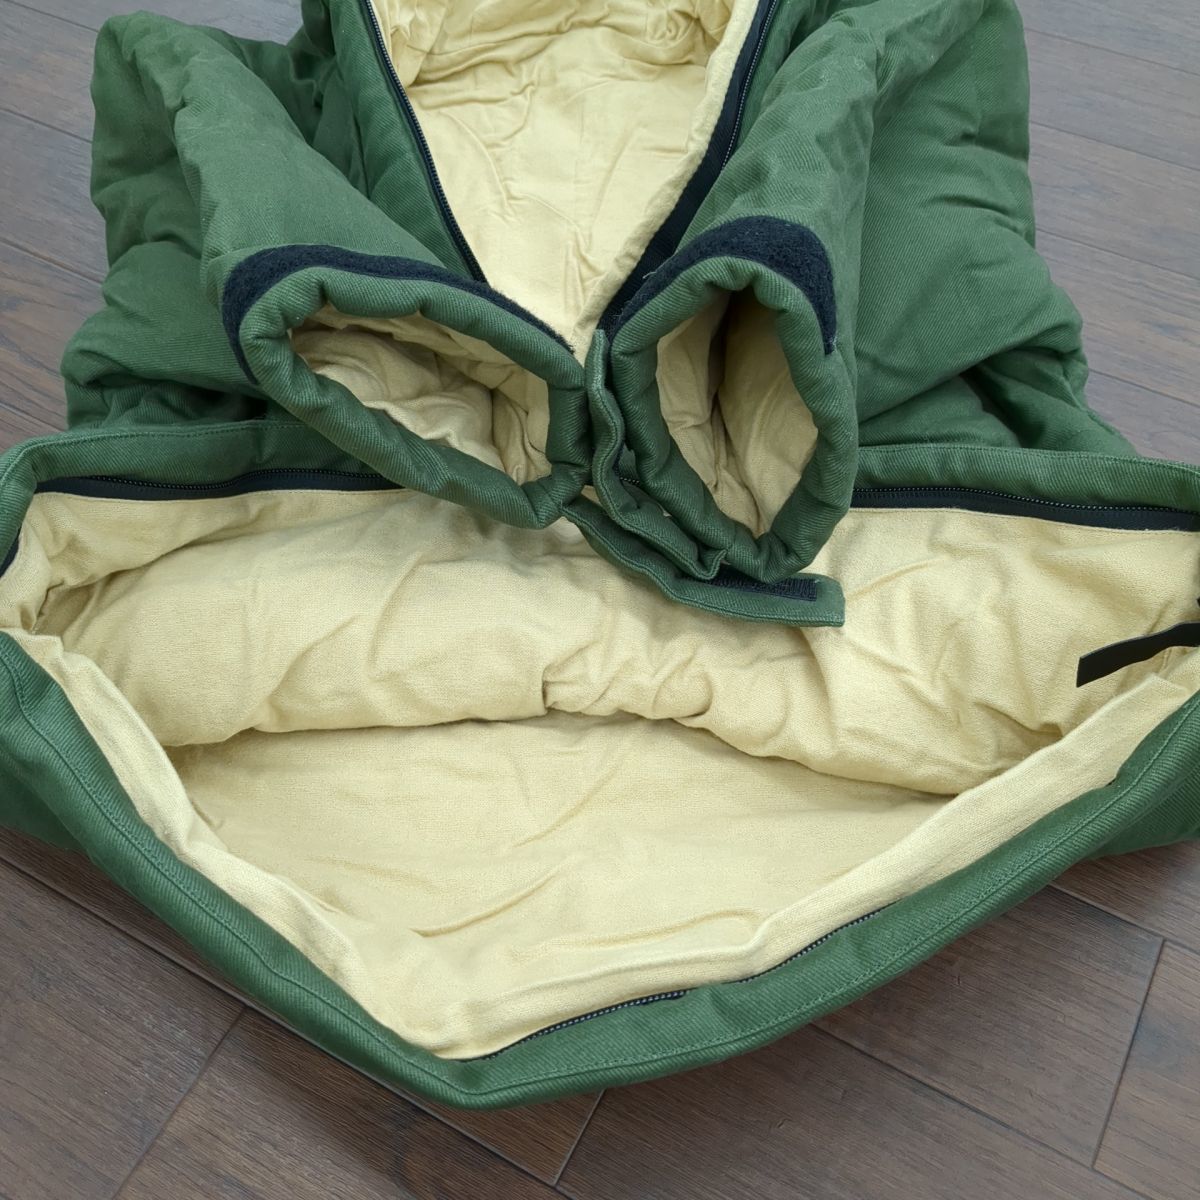 DOD jacket shula2(S) S1-707-KH рекомендация рост 150cm до жакет час длина одежды 59cm 2WAY спальный мешок *3110/ поле механизм Hamamatsu . бамбук магазин 